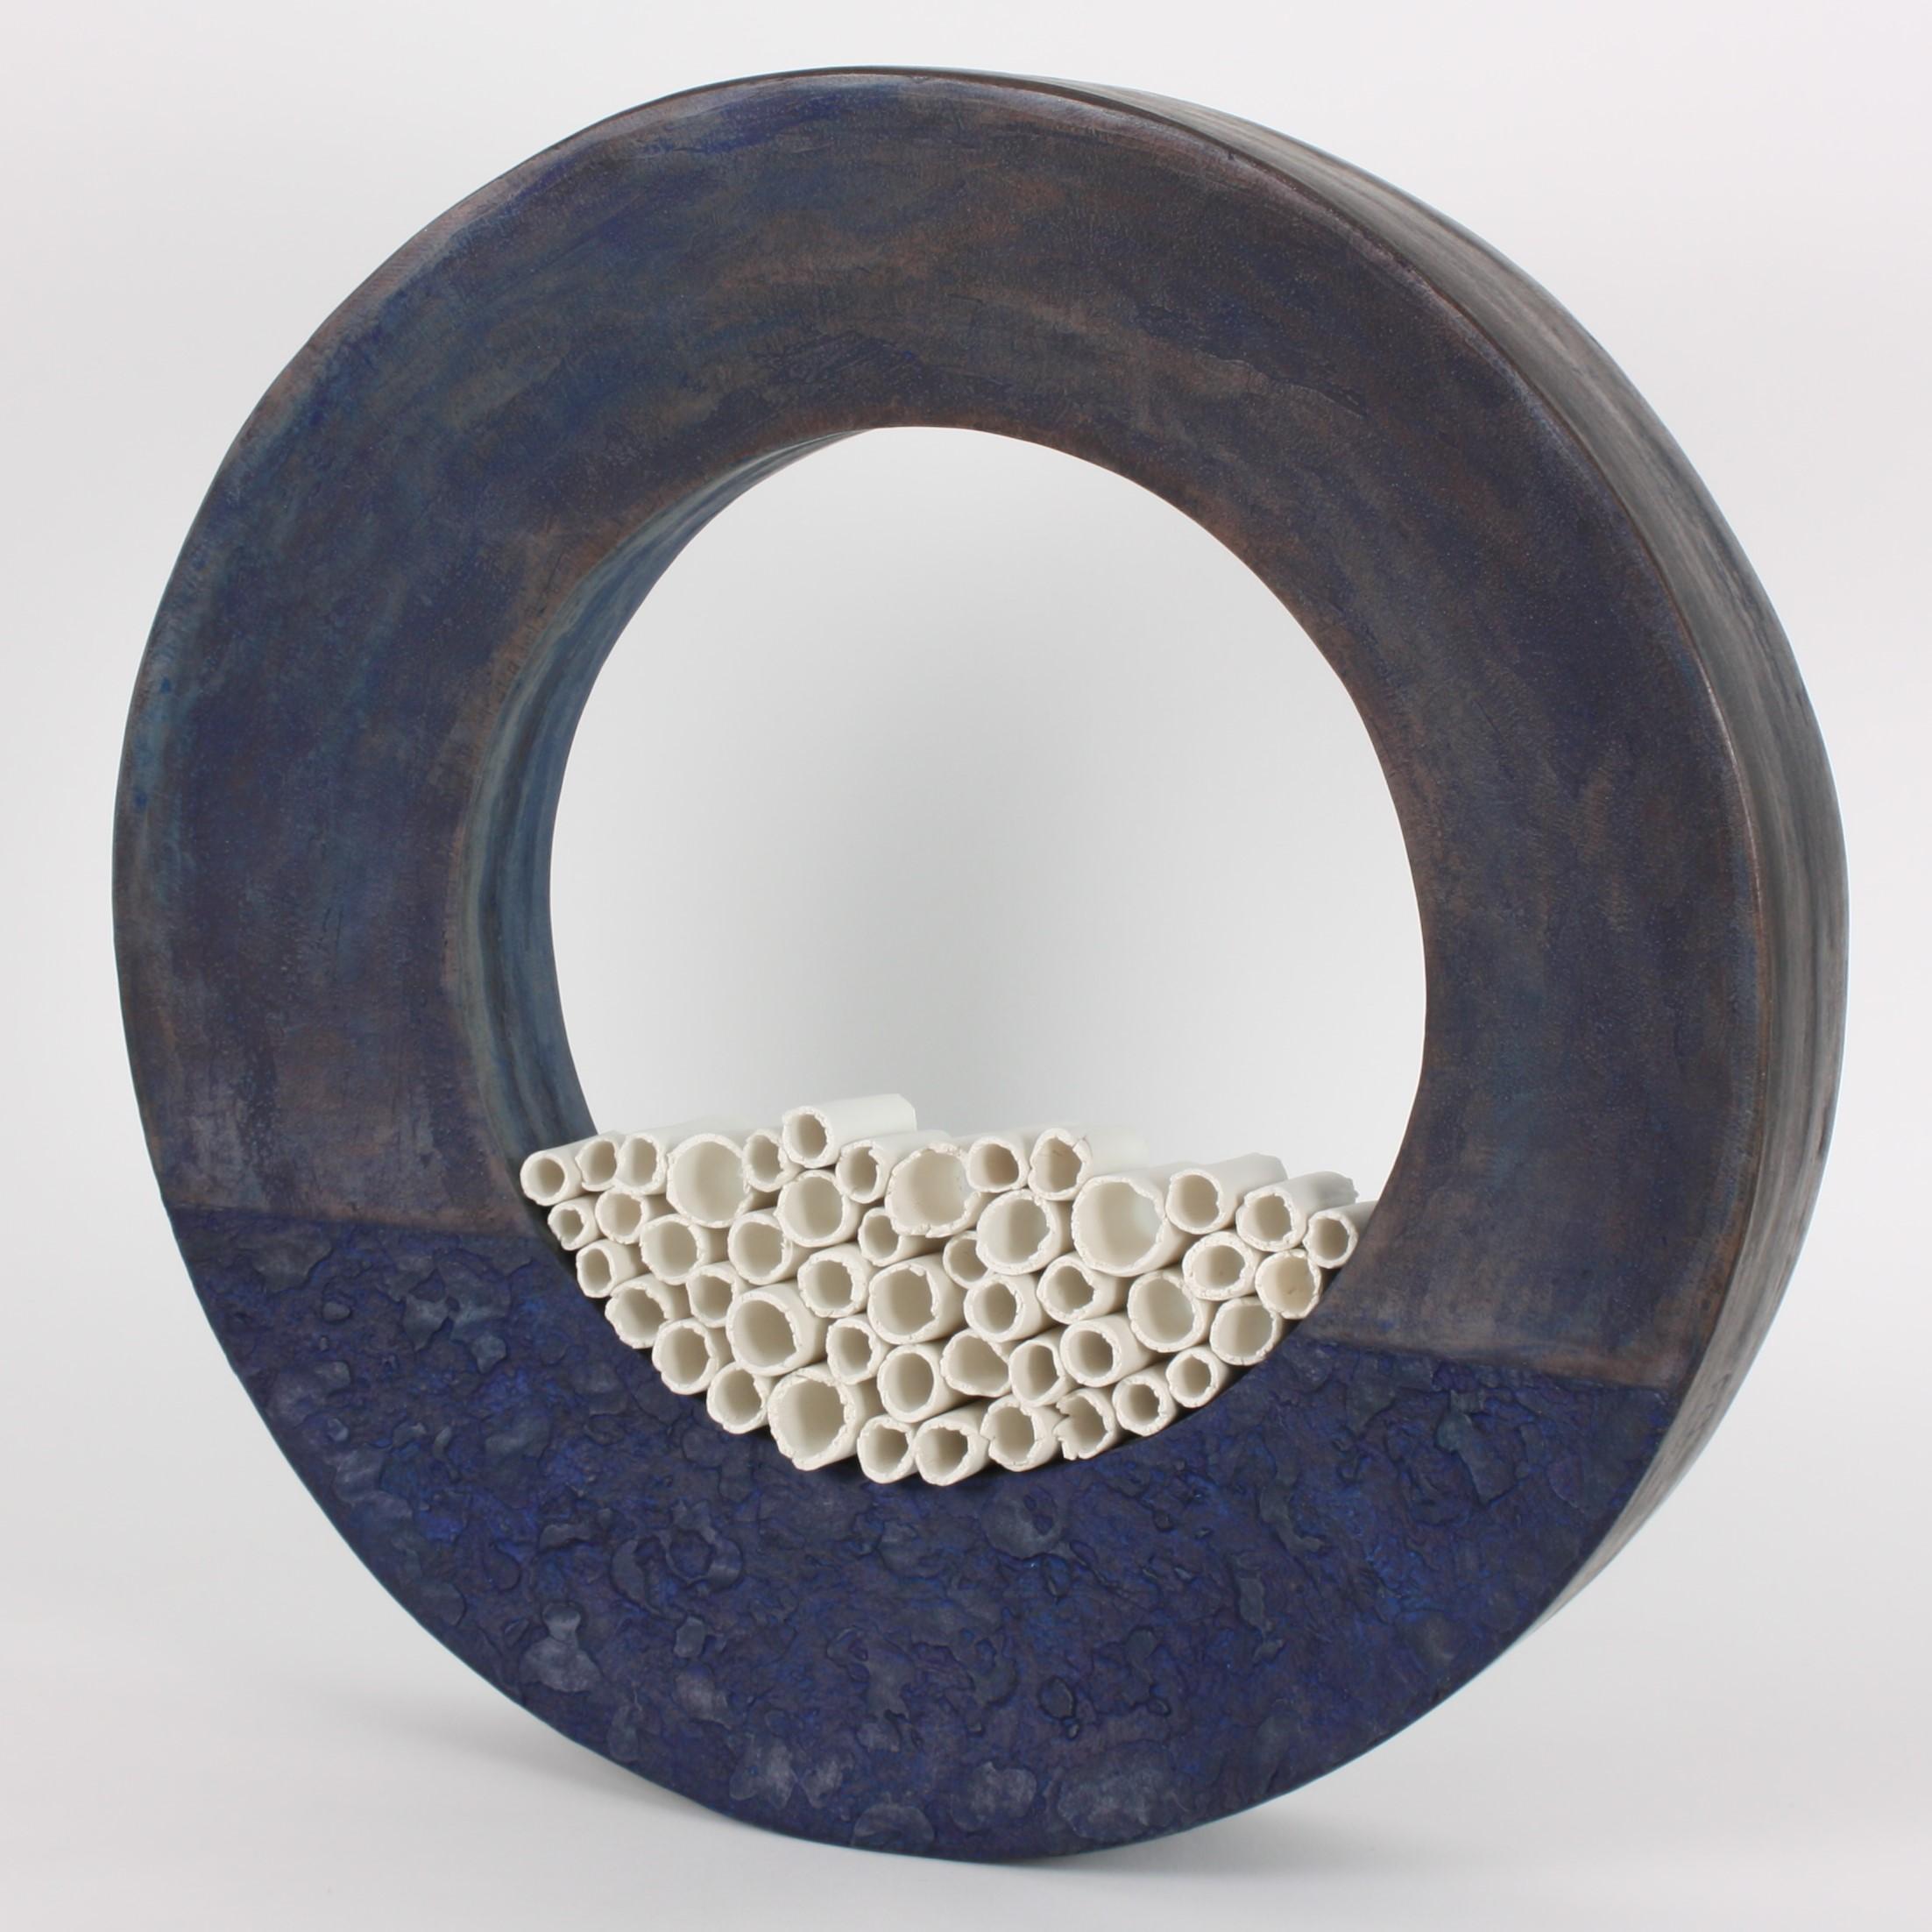 French Contemporary Ceramic Sculpture, Grand Anneau Bleu